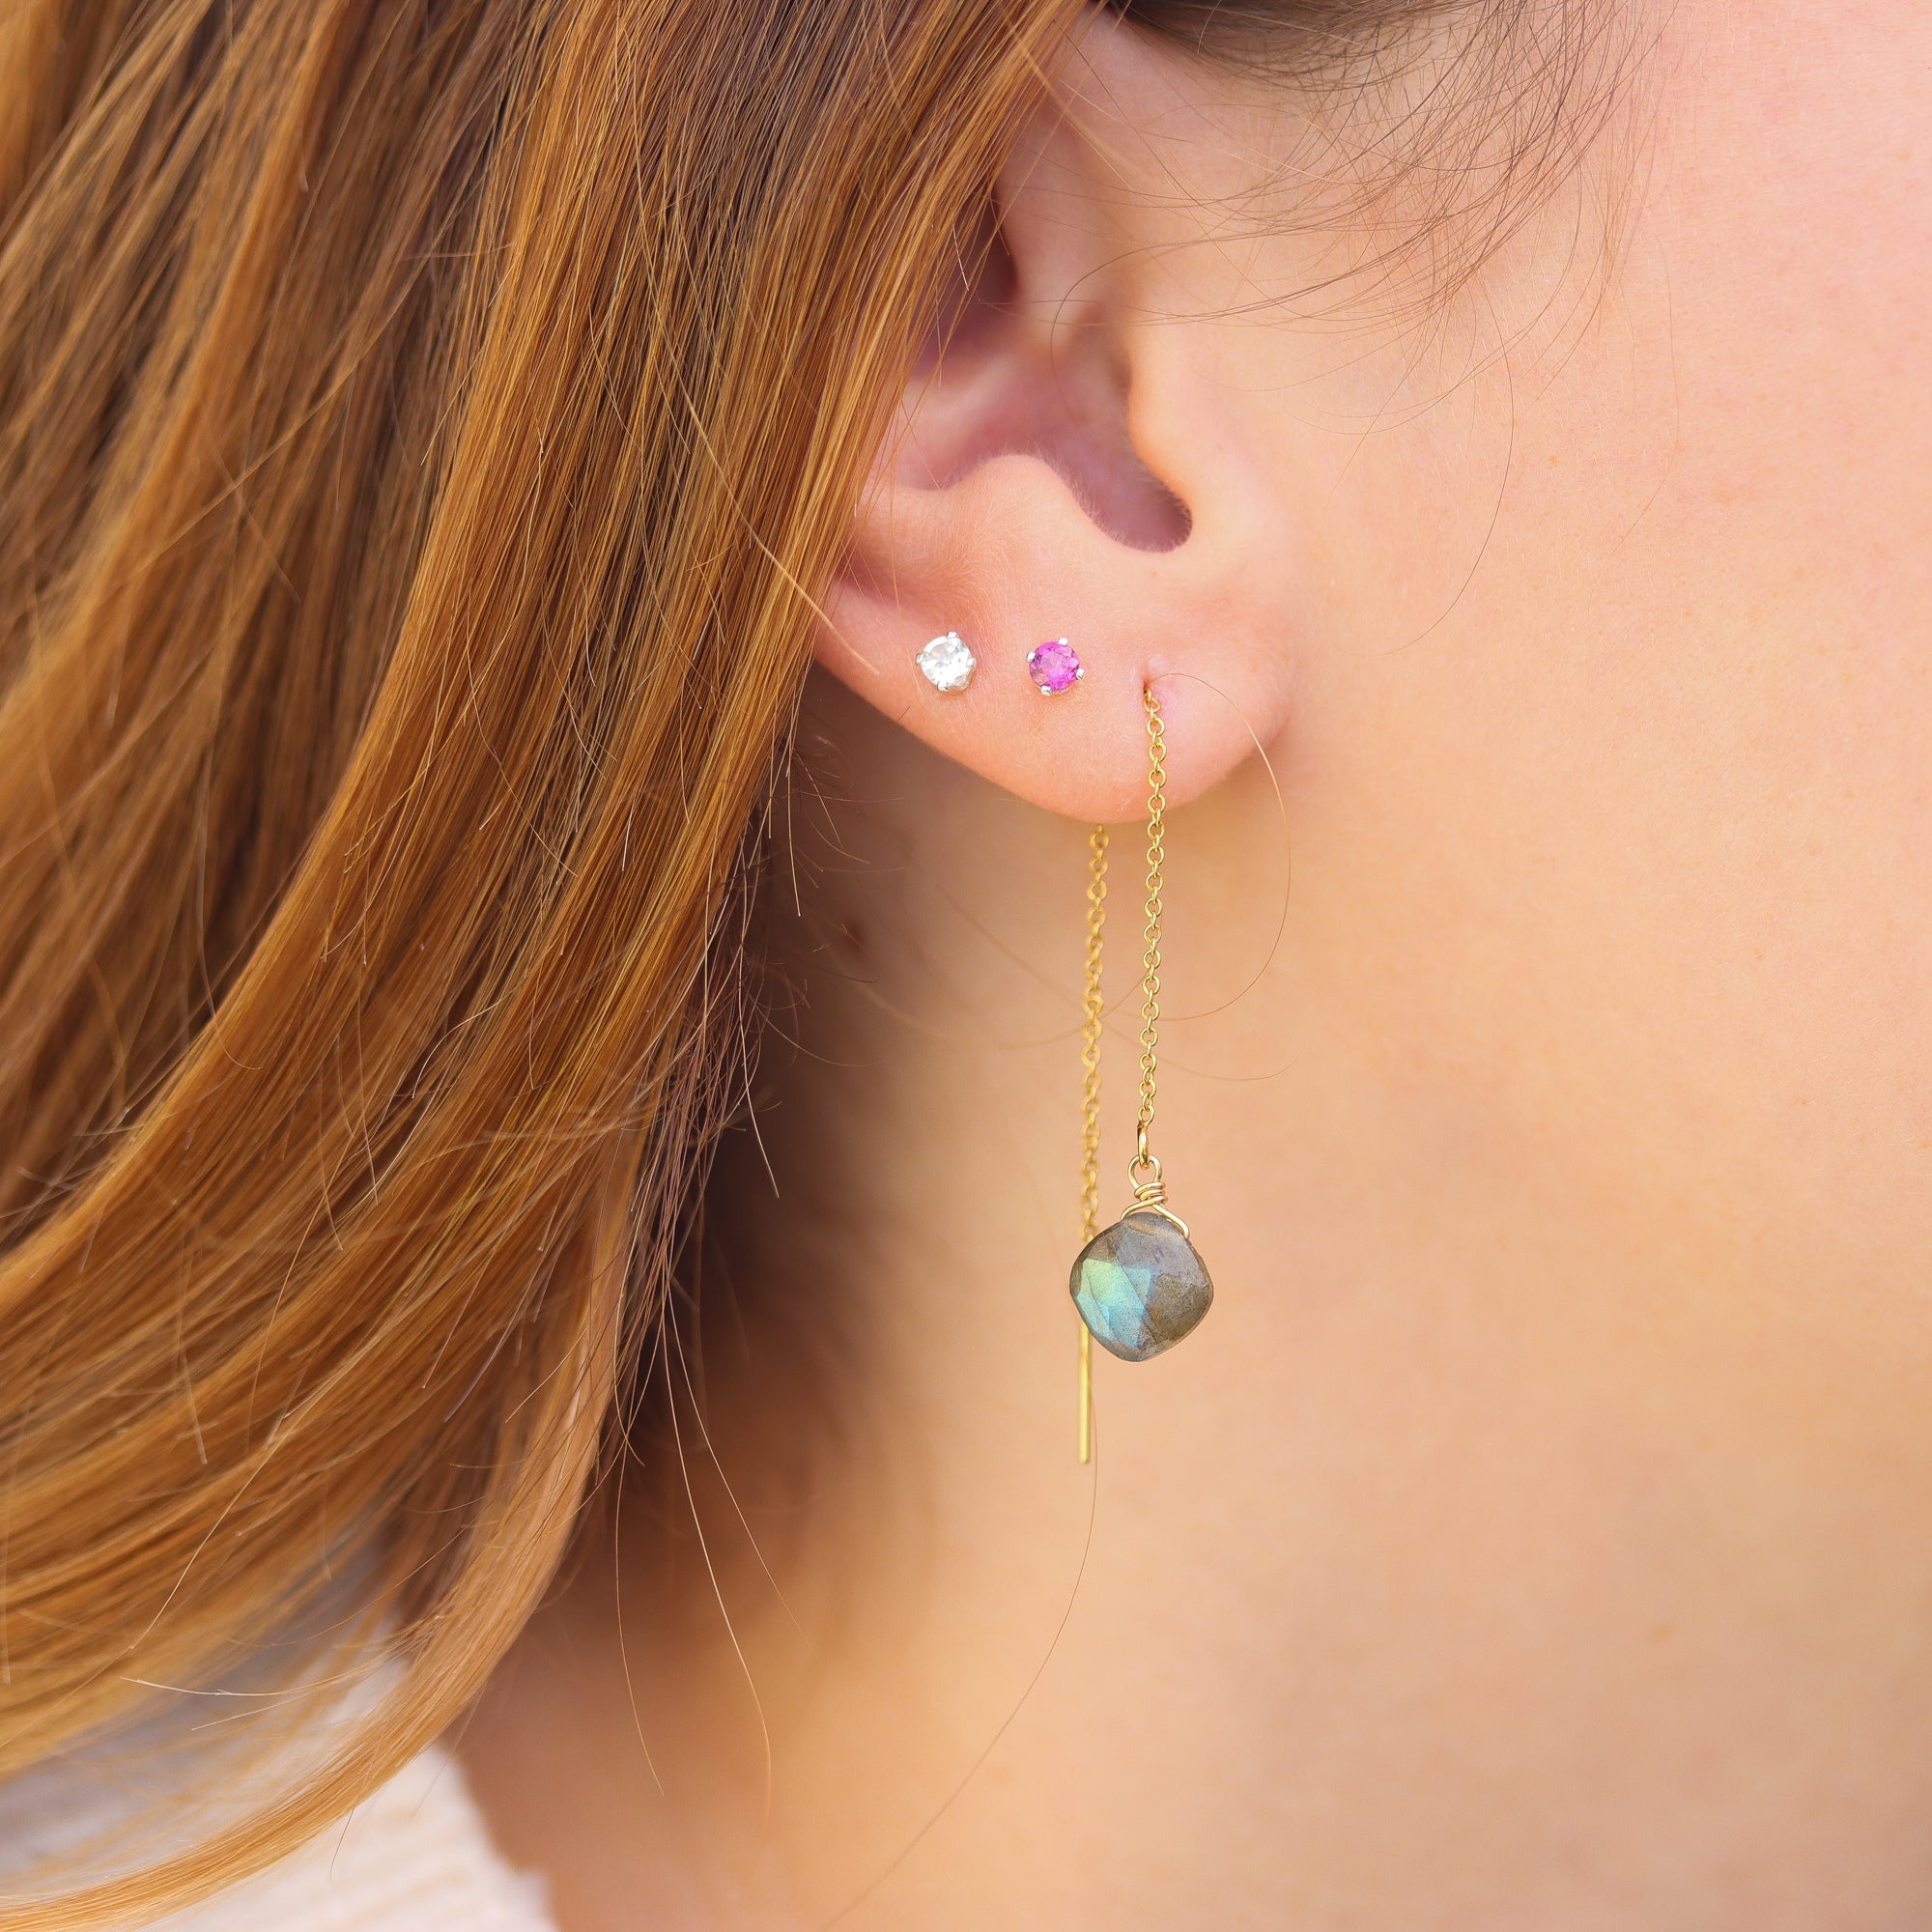 Stunning Gemstone Threader Earrings